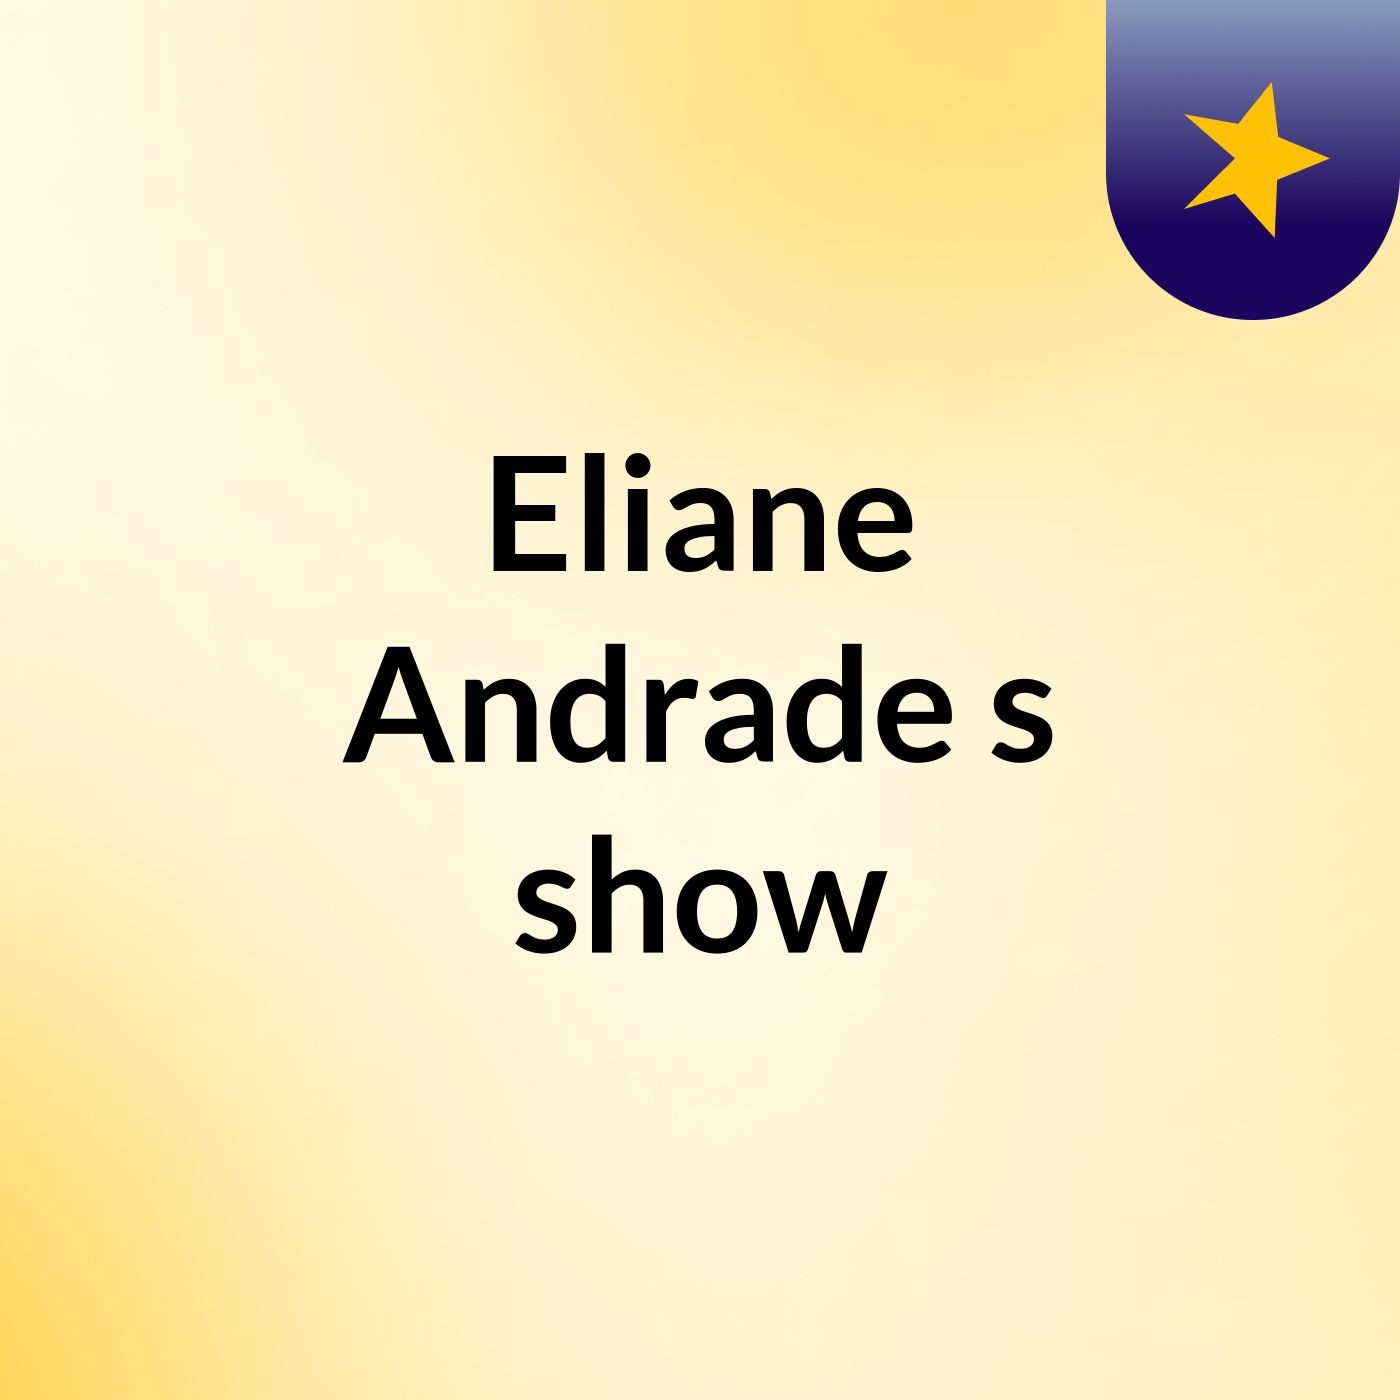 Episódio 3 - Eliane Andrade's show